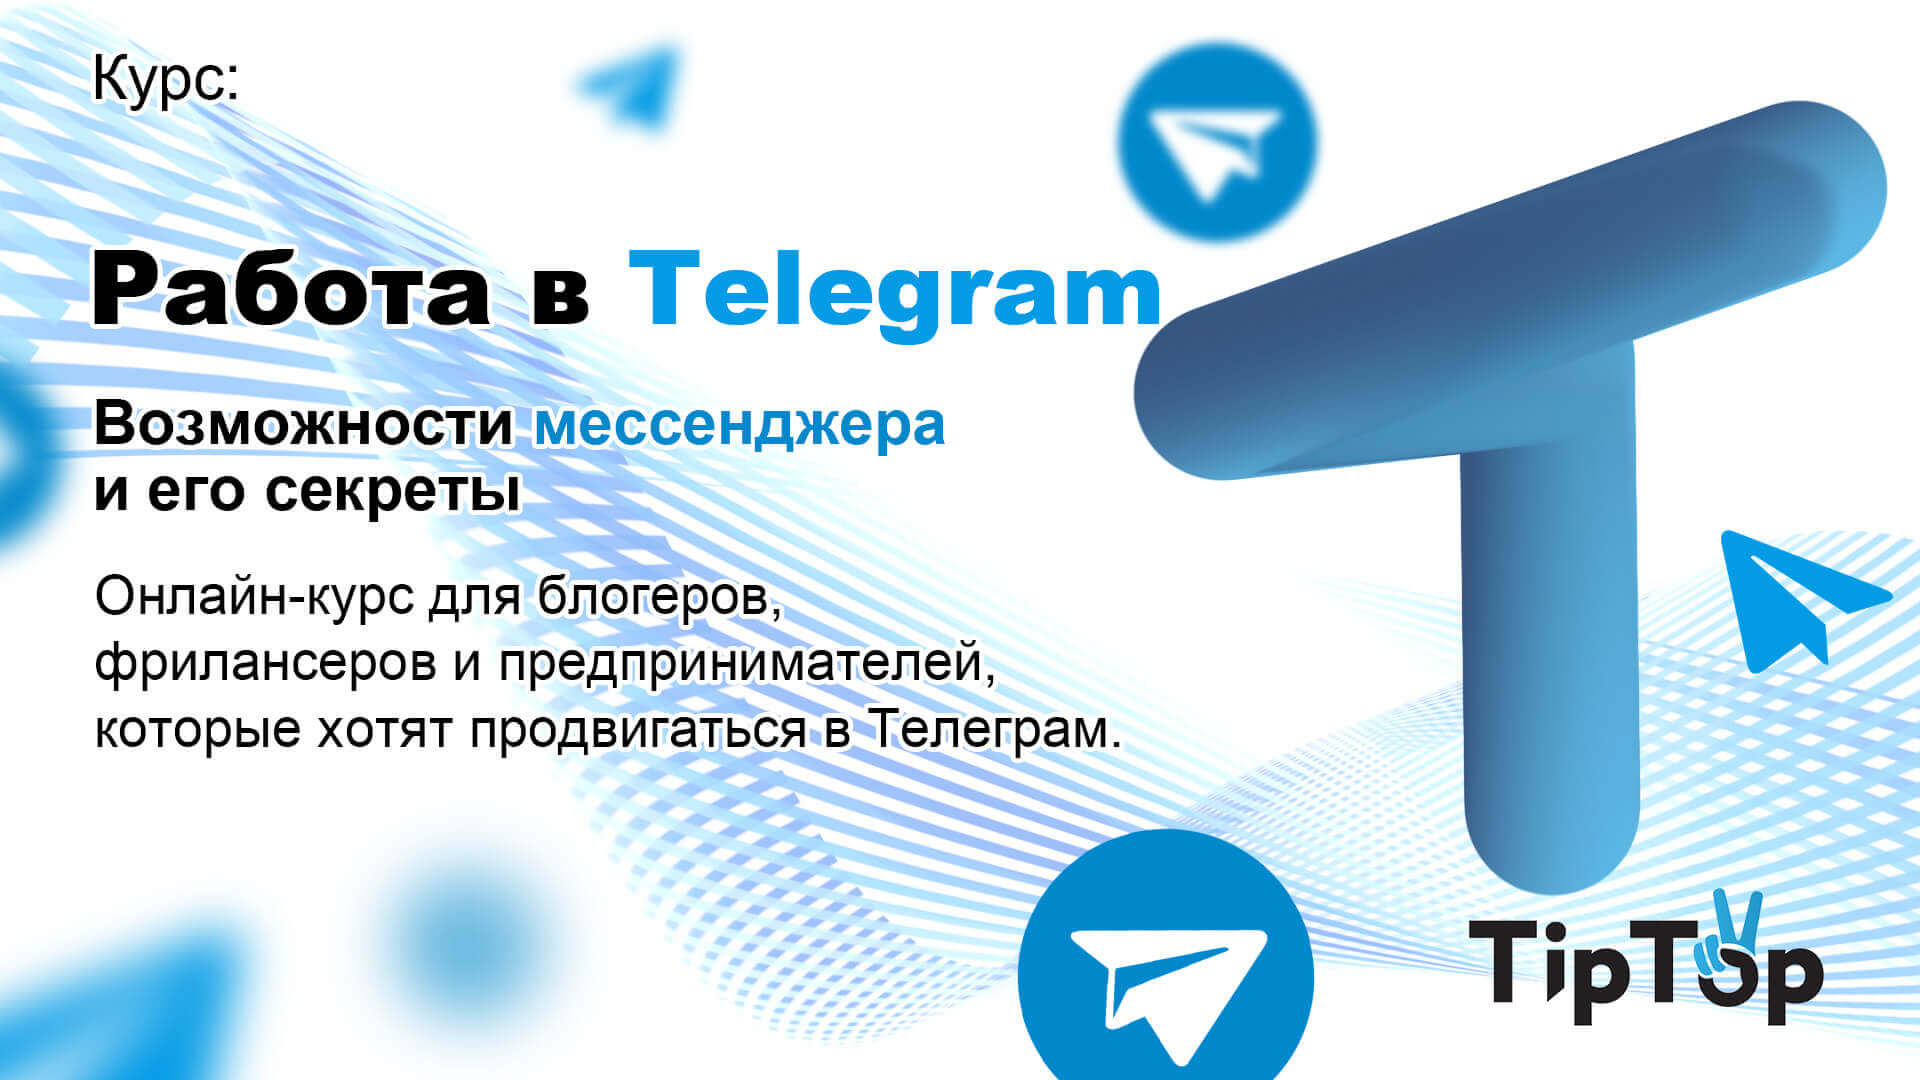 TipTop — Работа в Telegram